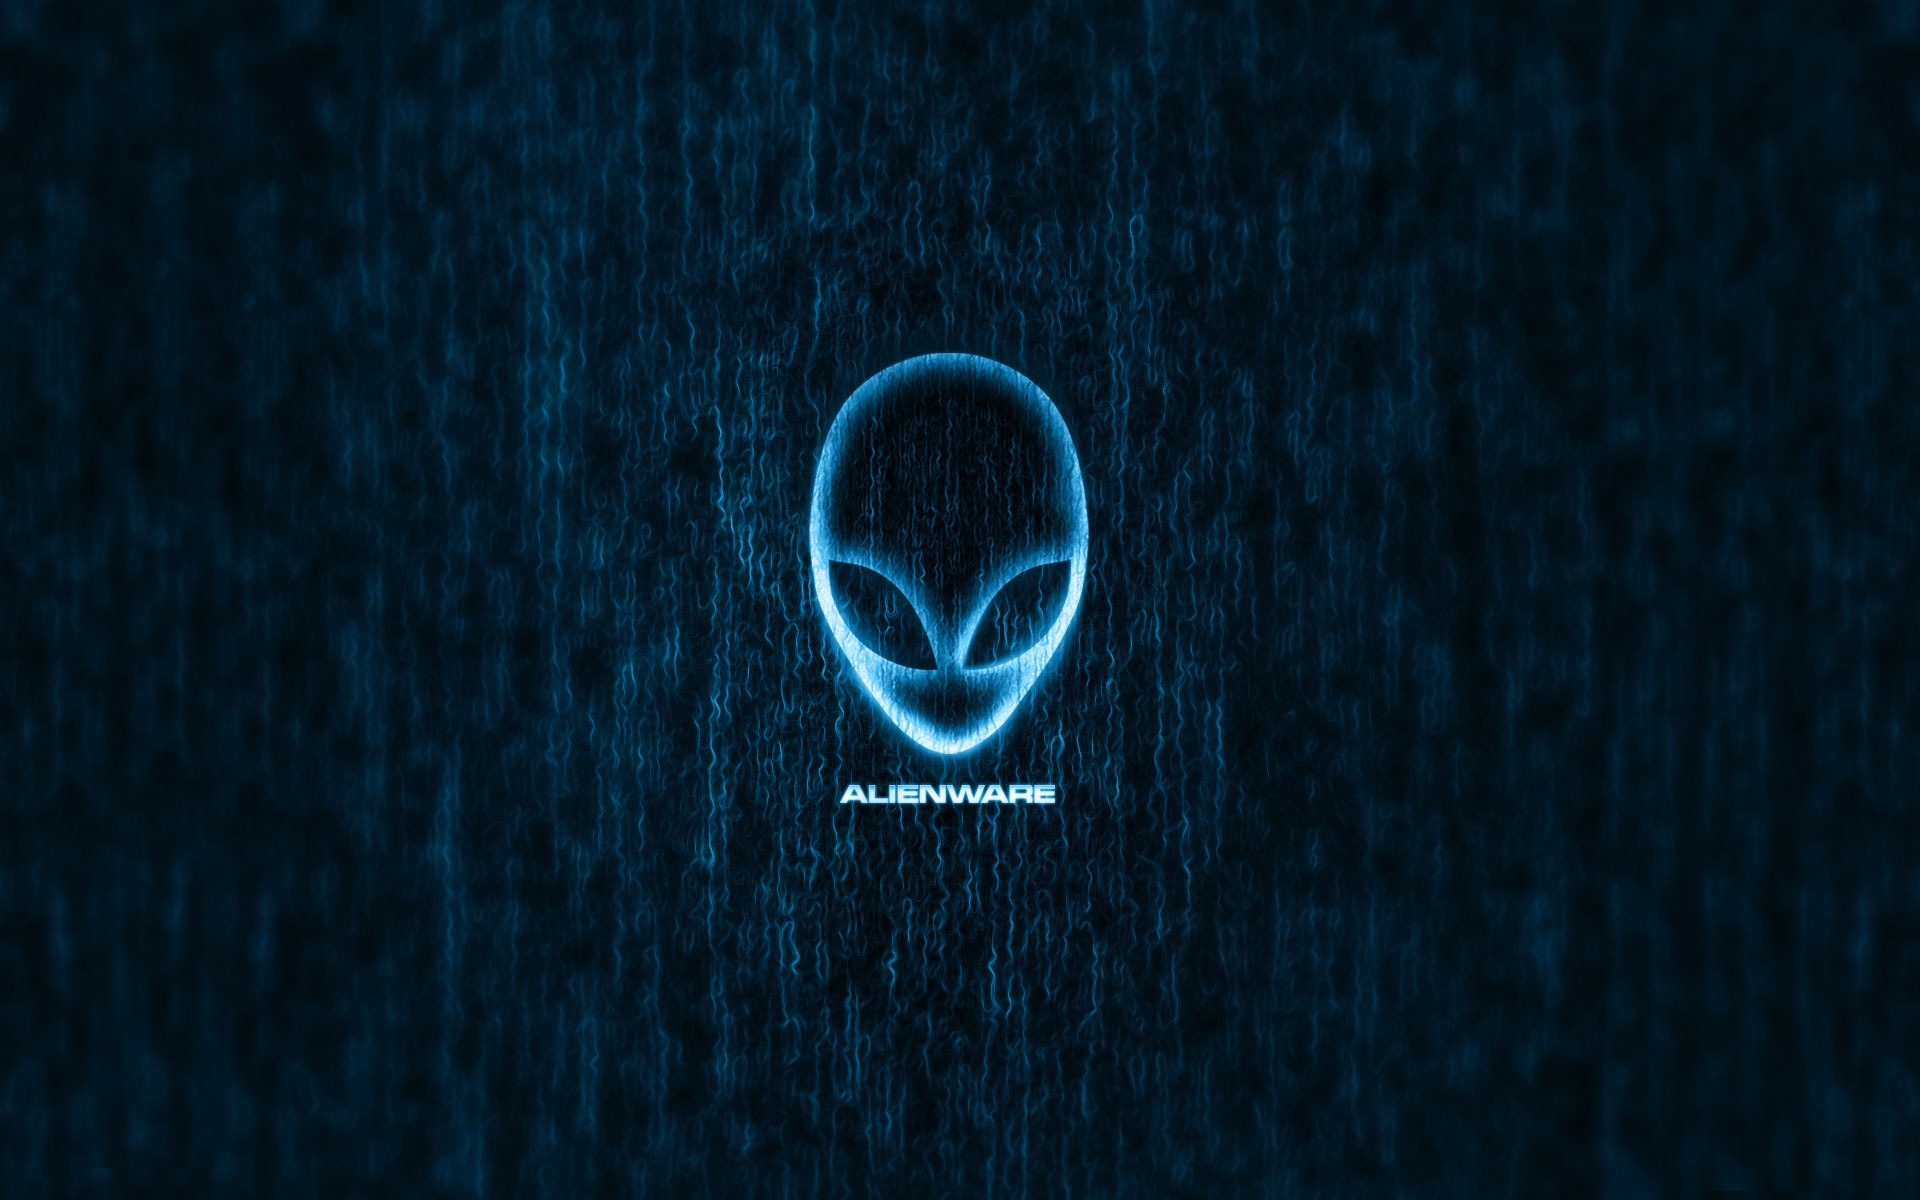 69  品牌标志 69  alienware蓝色壁纸1024x768分辨率查看